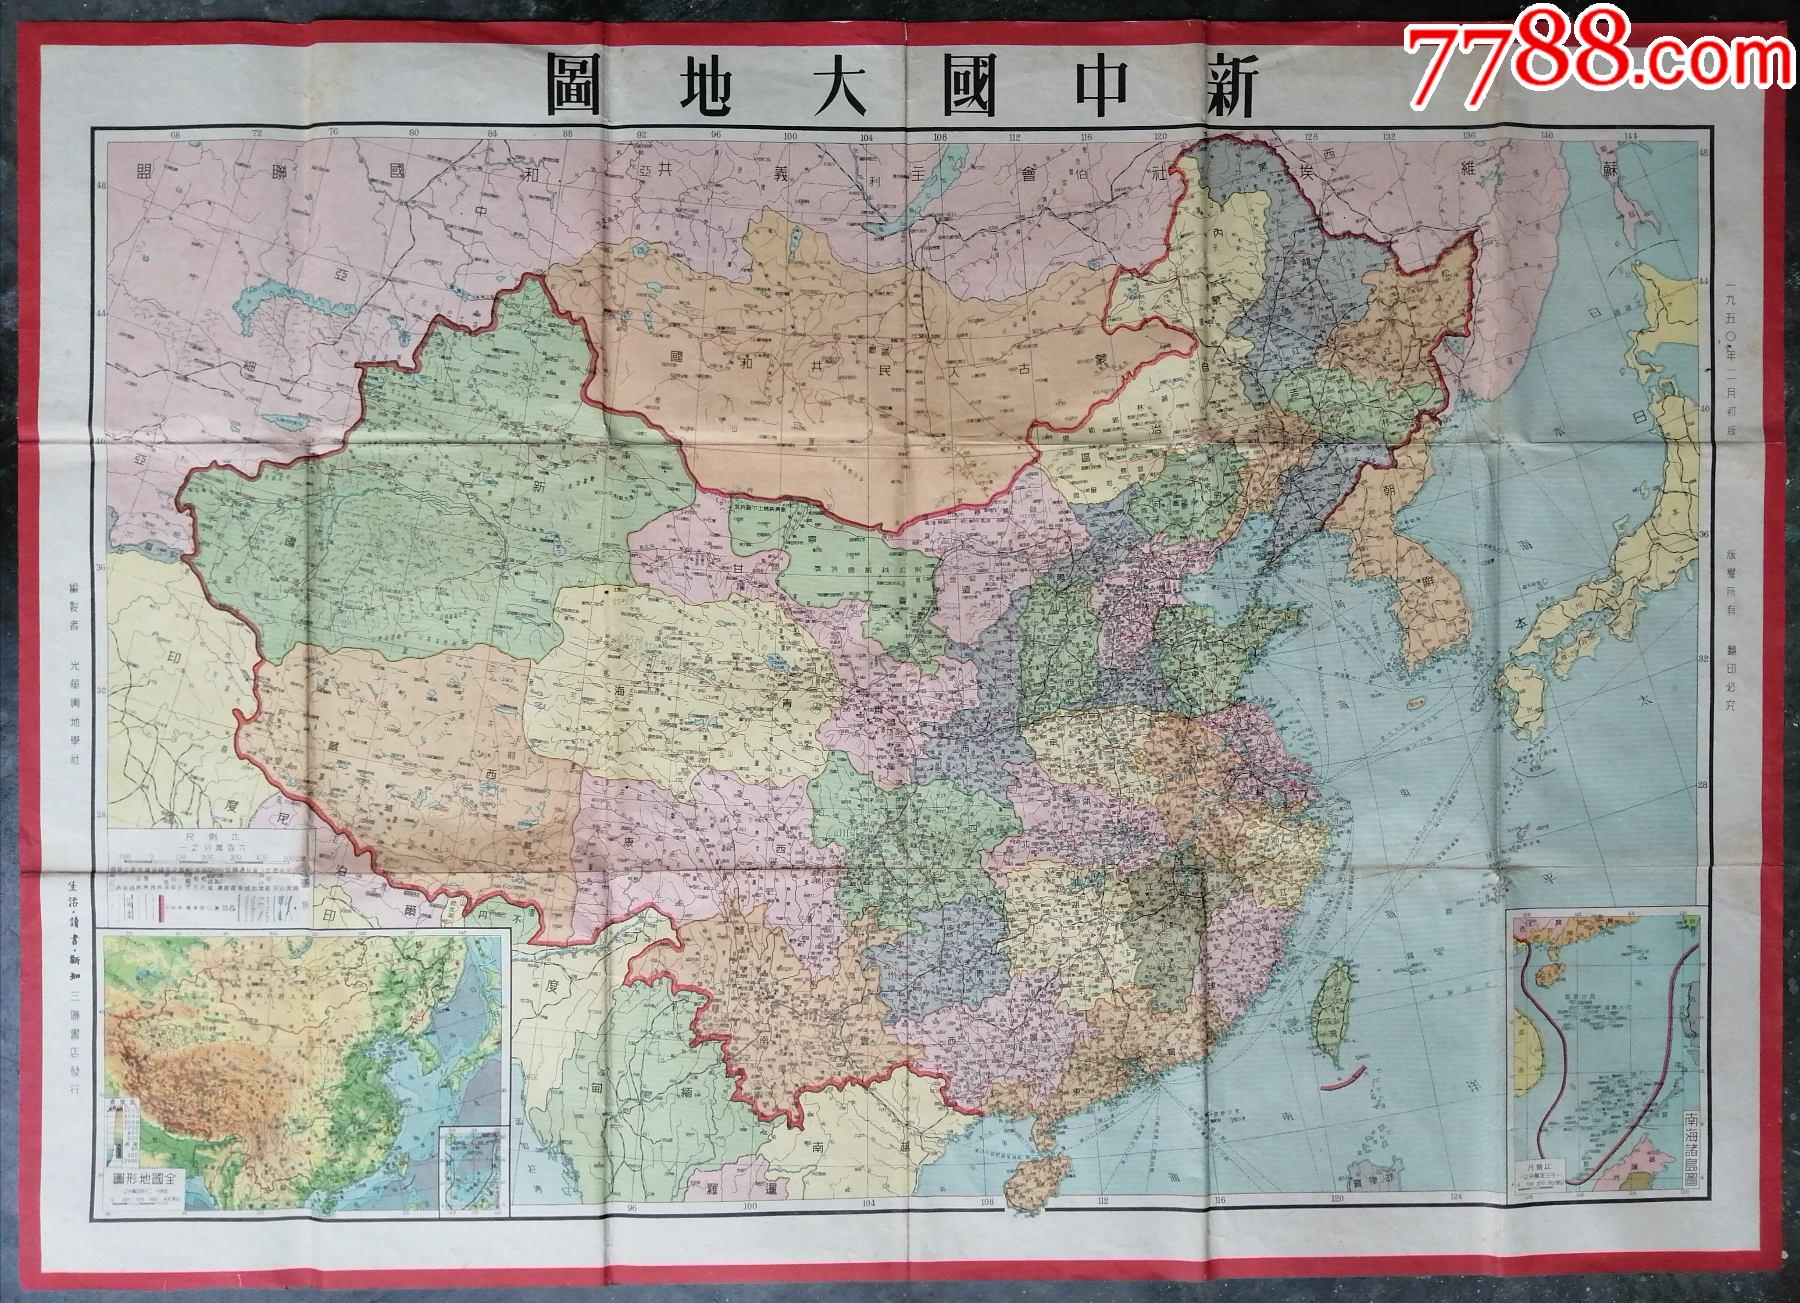 1950年2月初版《新中国大地图》,建国后出版的全国地图最早的版本之一